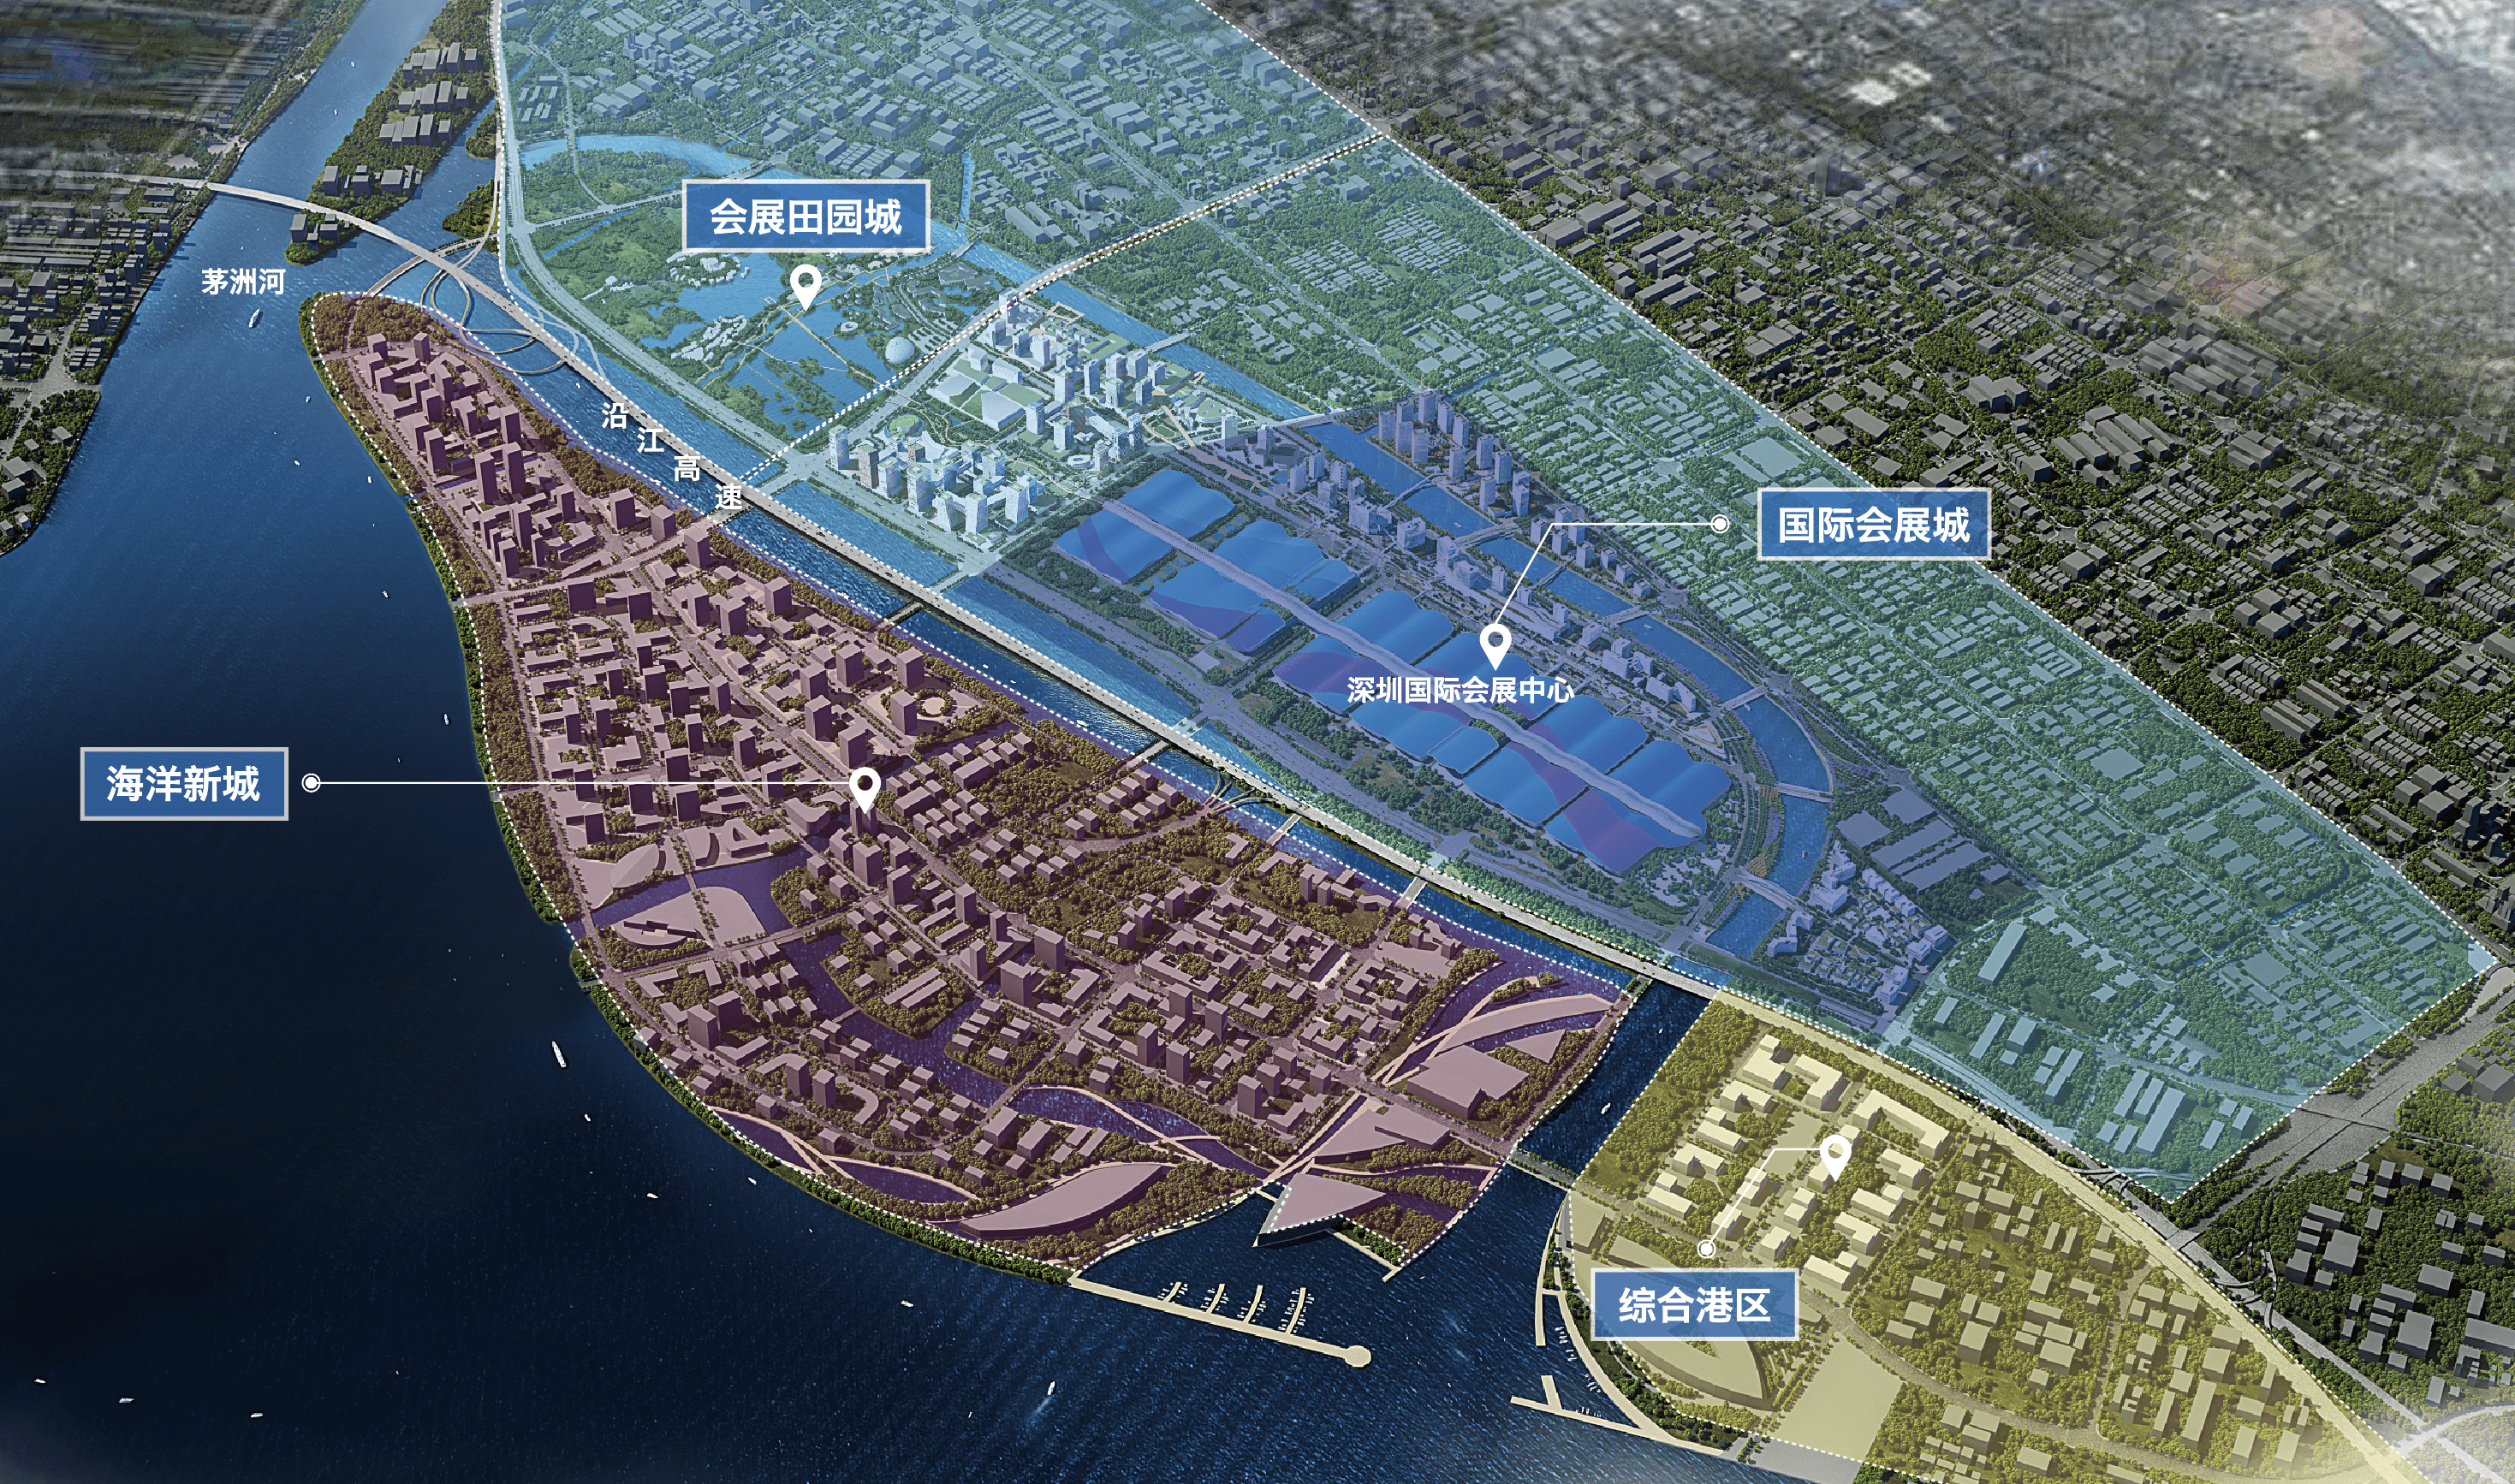 正方新城2025规划图片